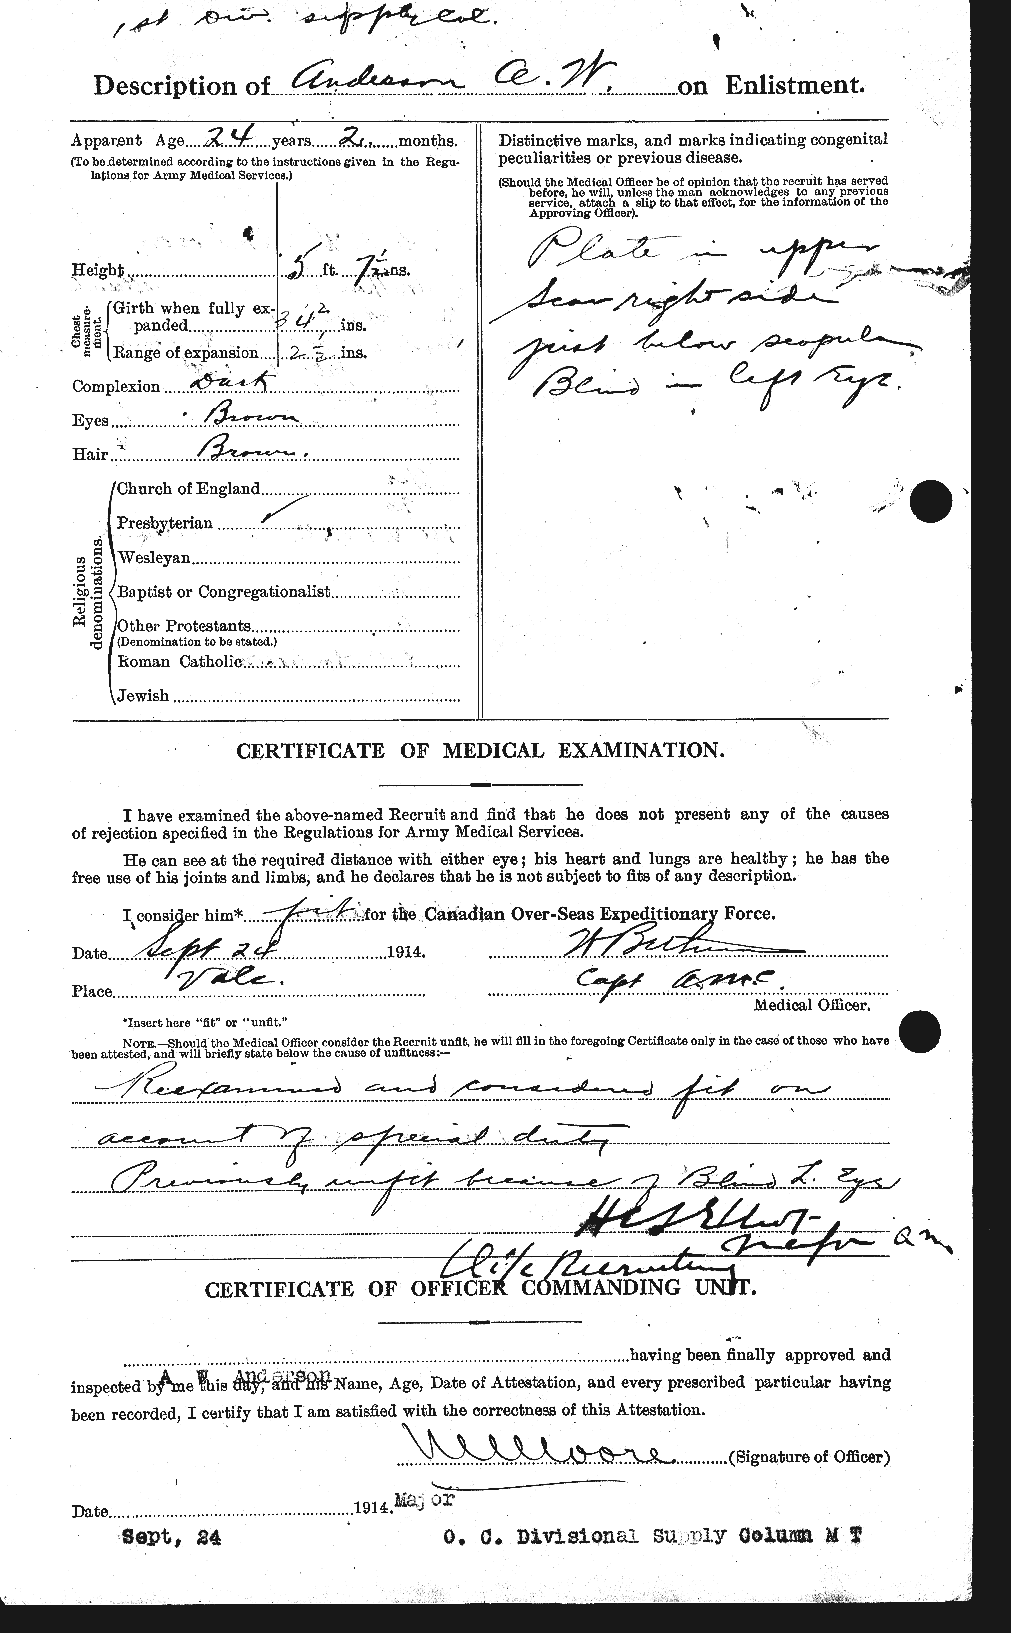 Dossiers du Personnel de la Première Guerre mondiale - CEC 209348b